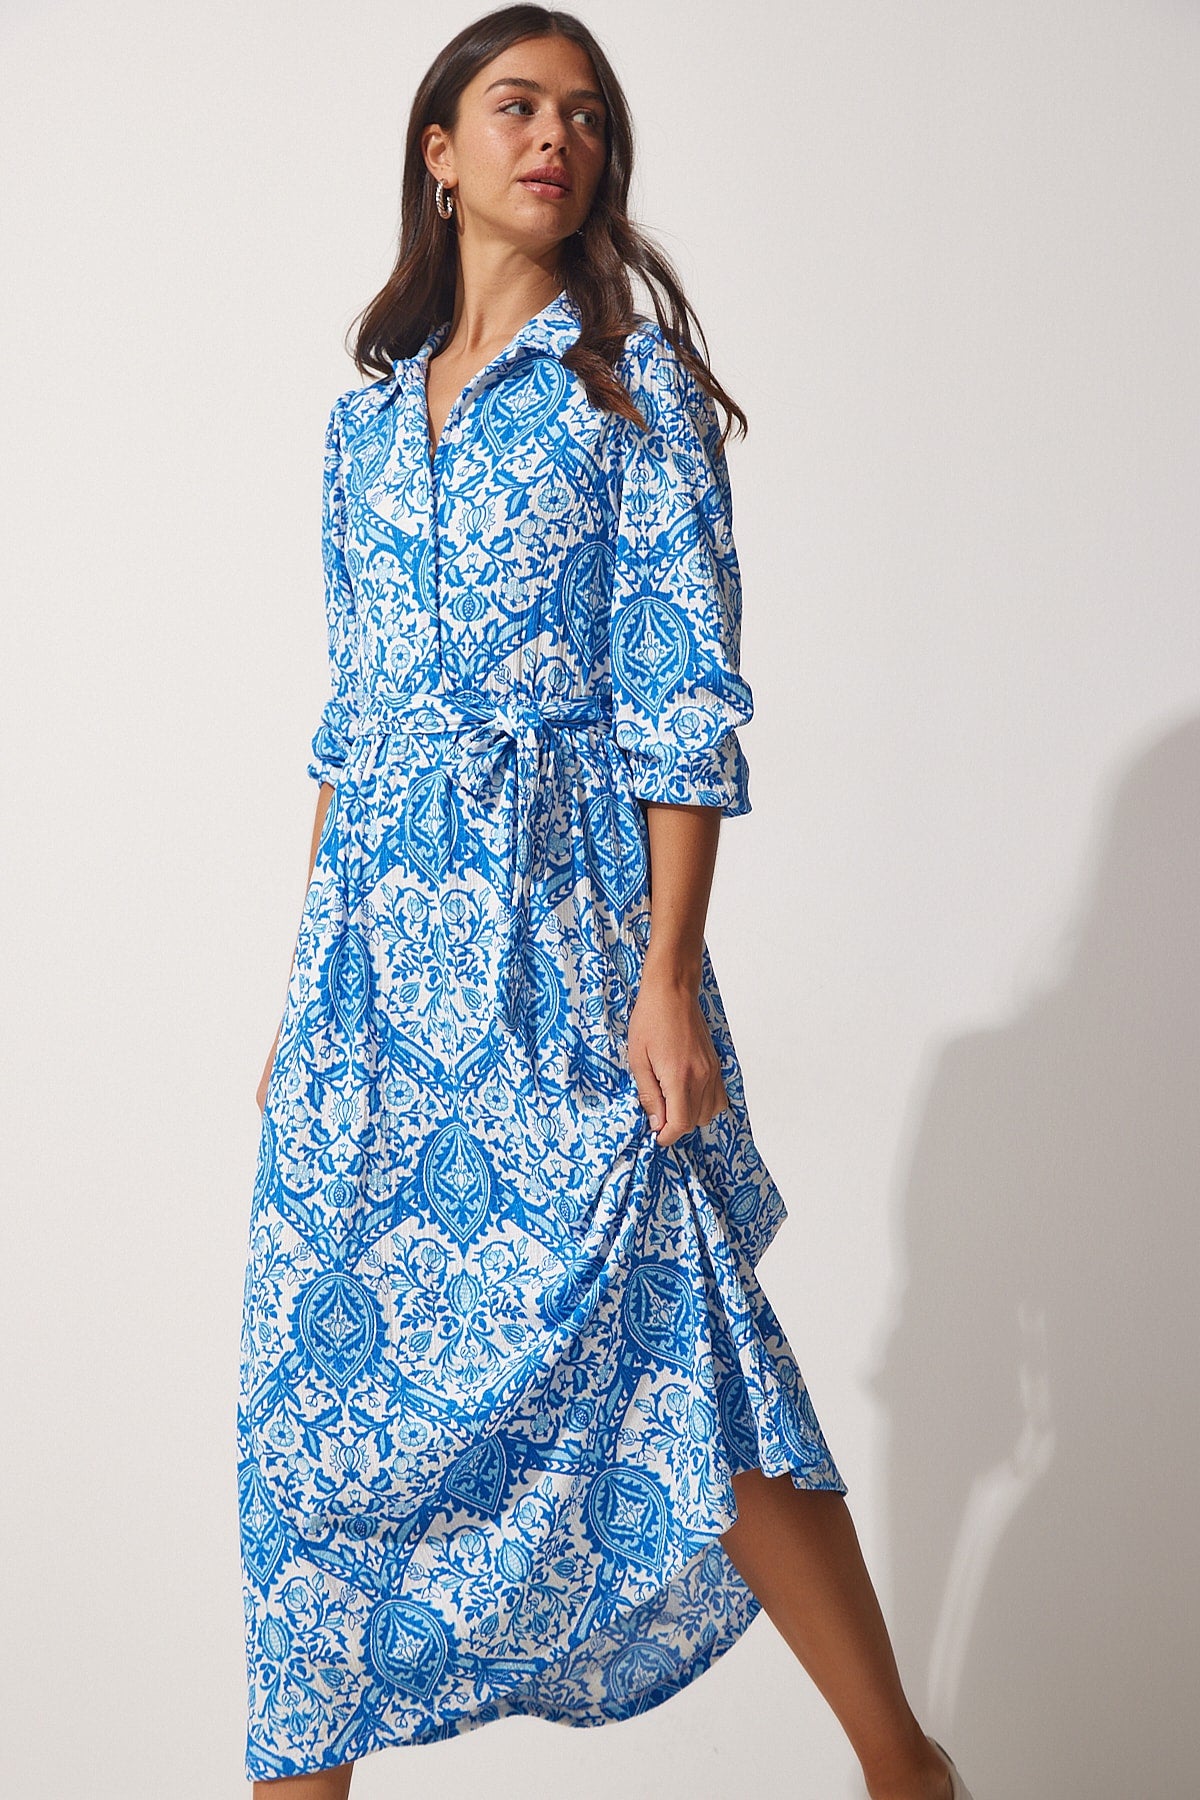 Women's Blue Patterned Long Summer Knitting Shirt Dress MC00182